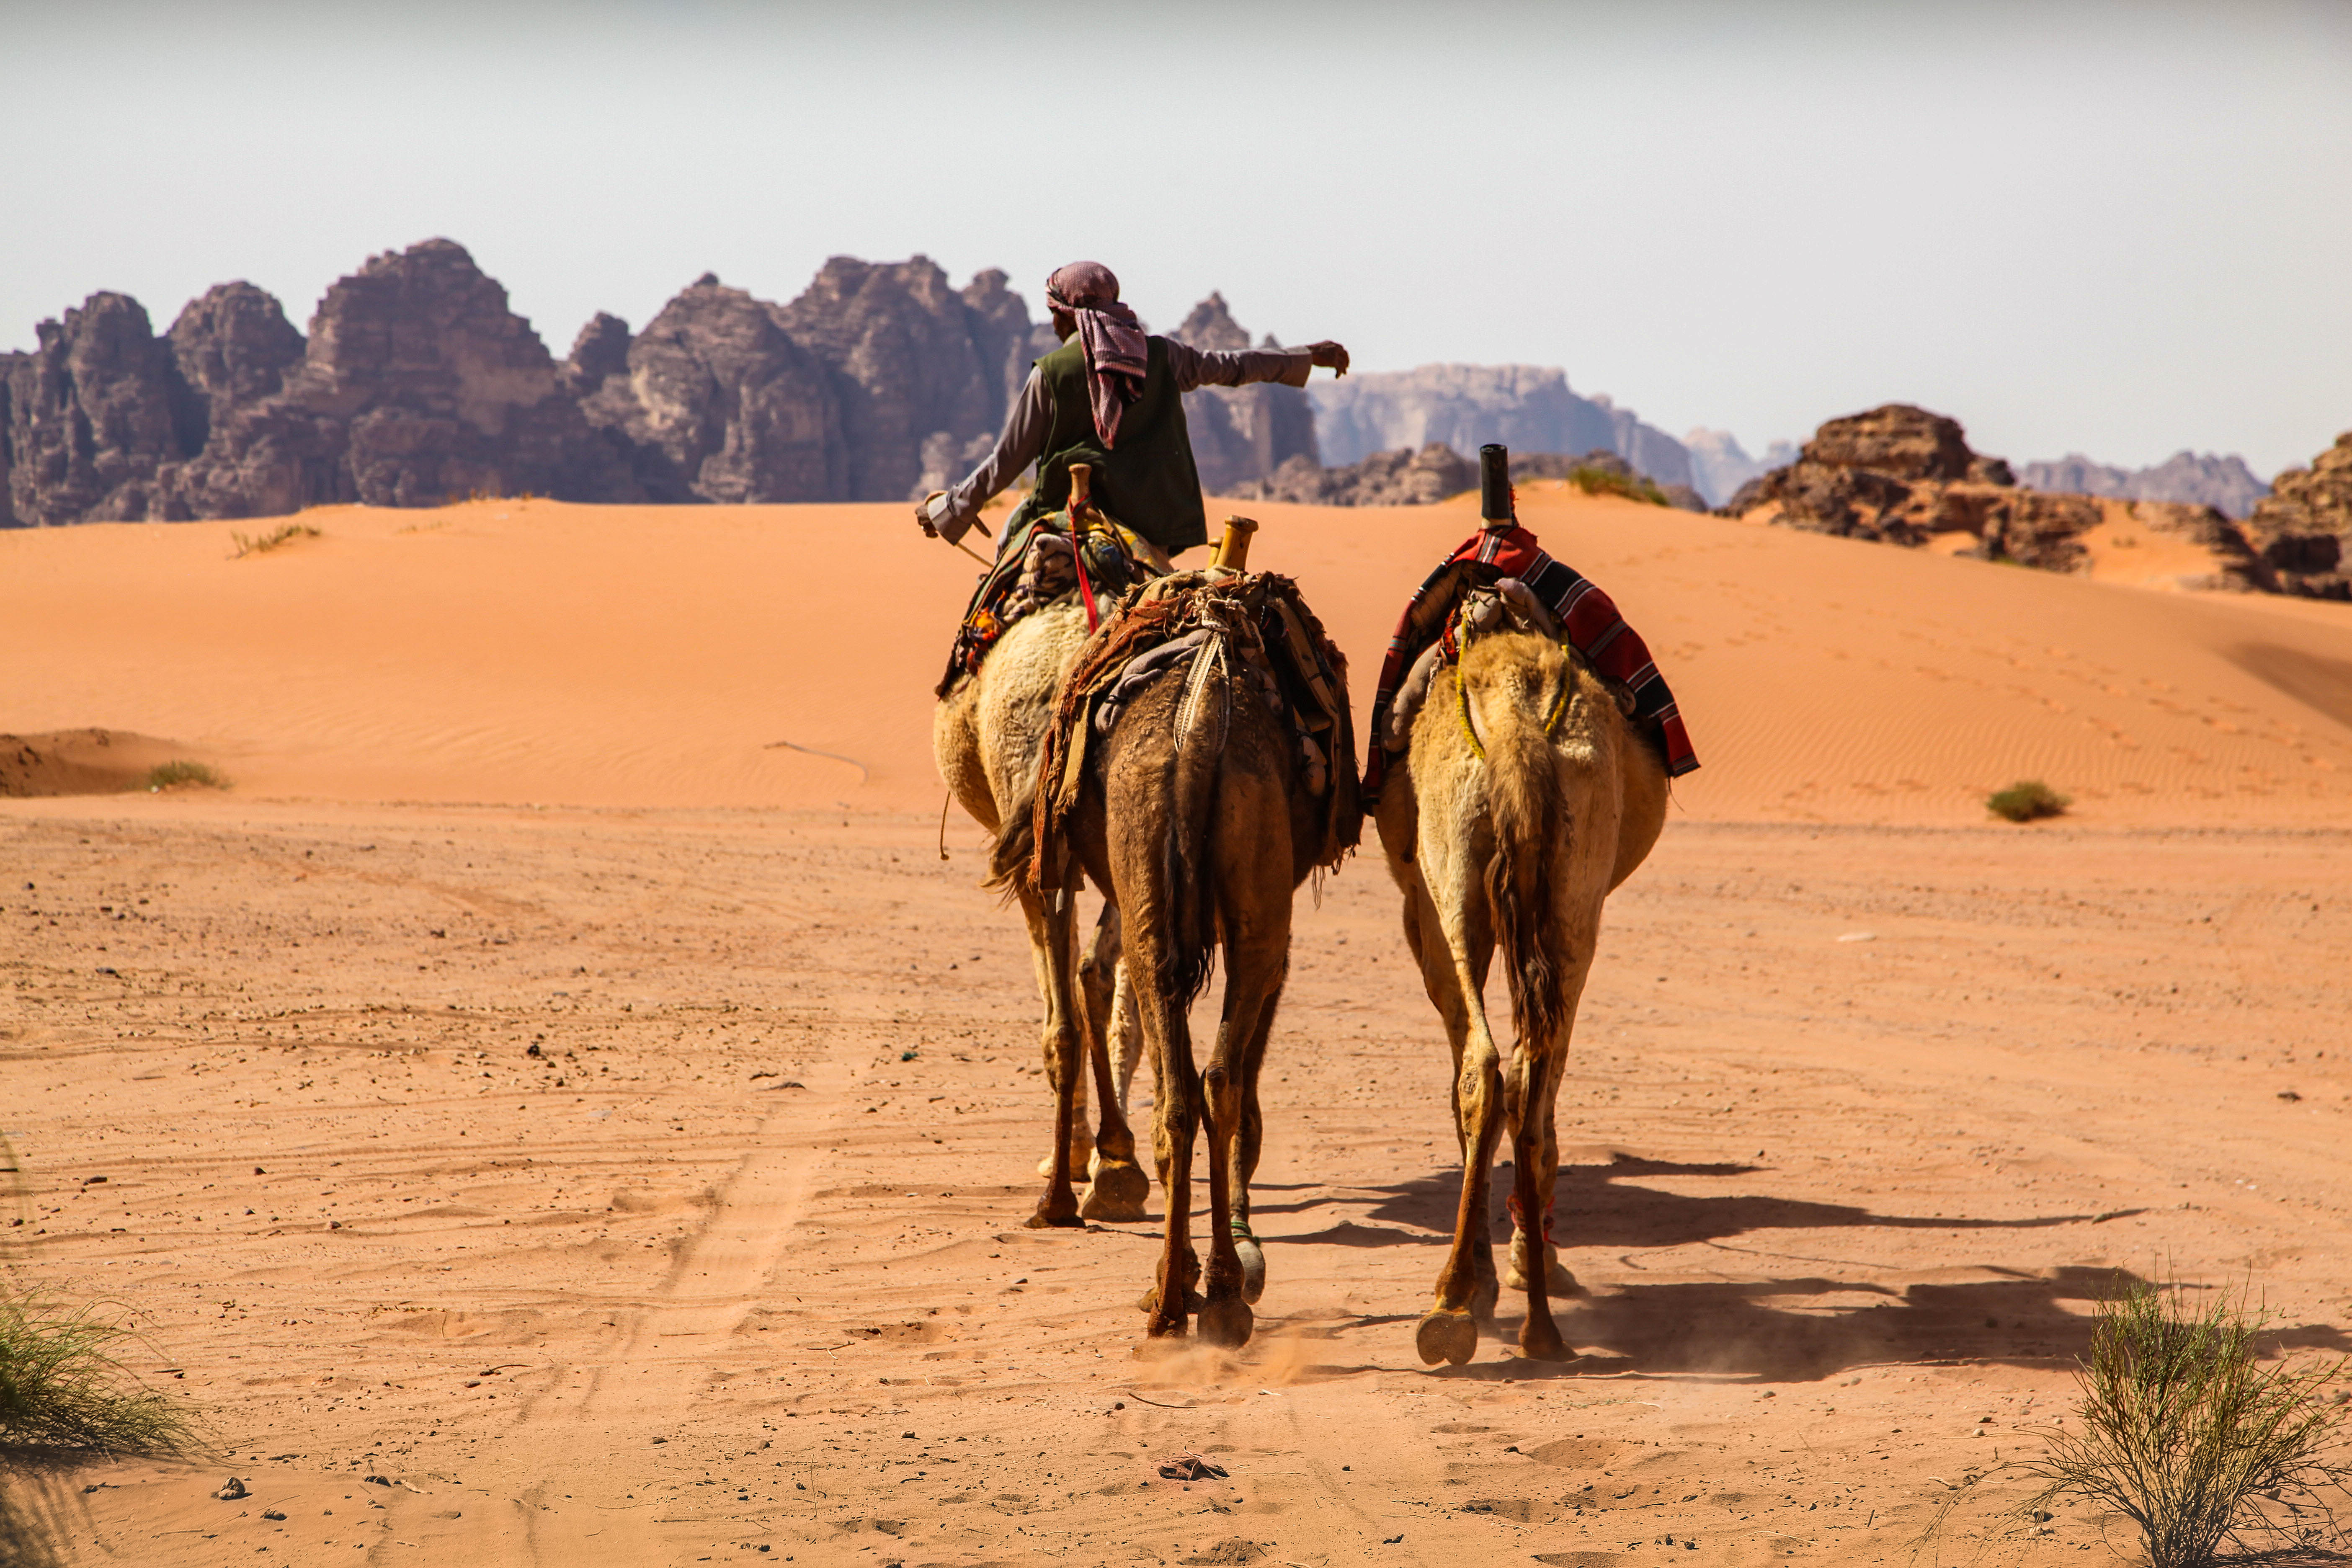 Kamelen op wandel in het rode zand van de woestijn